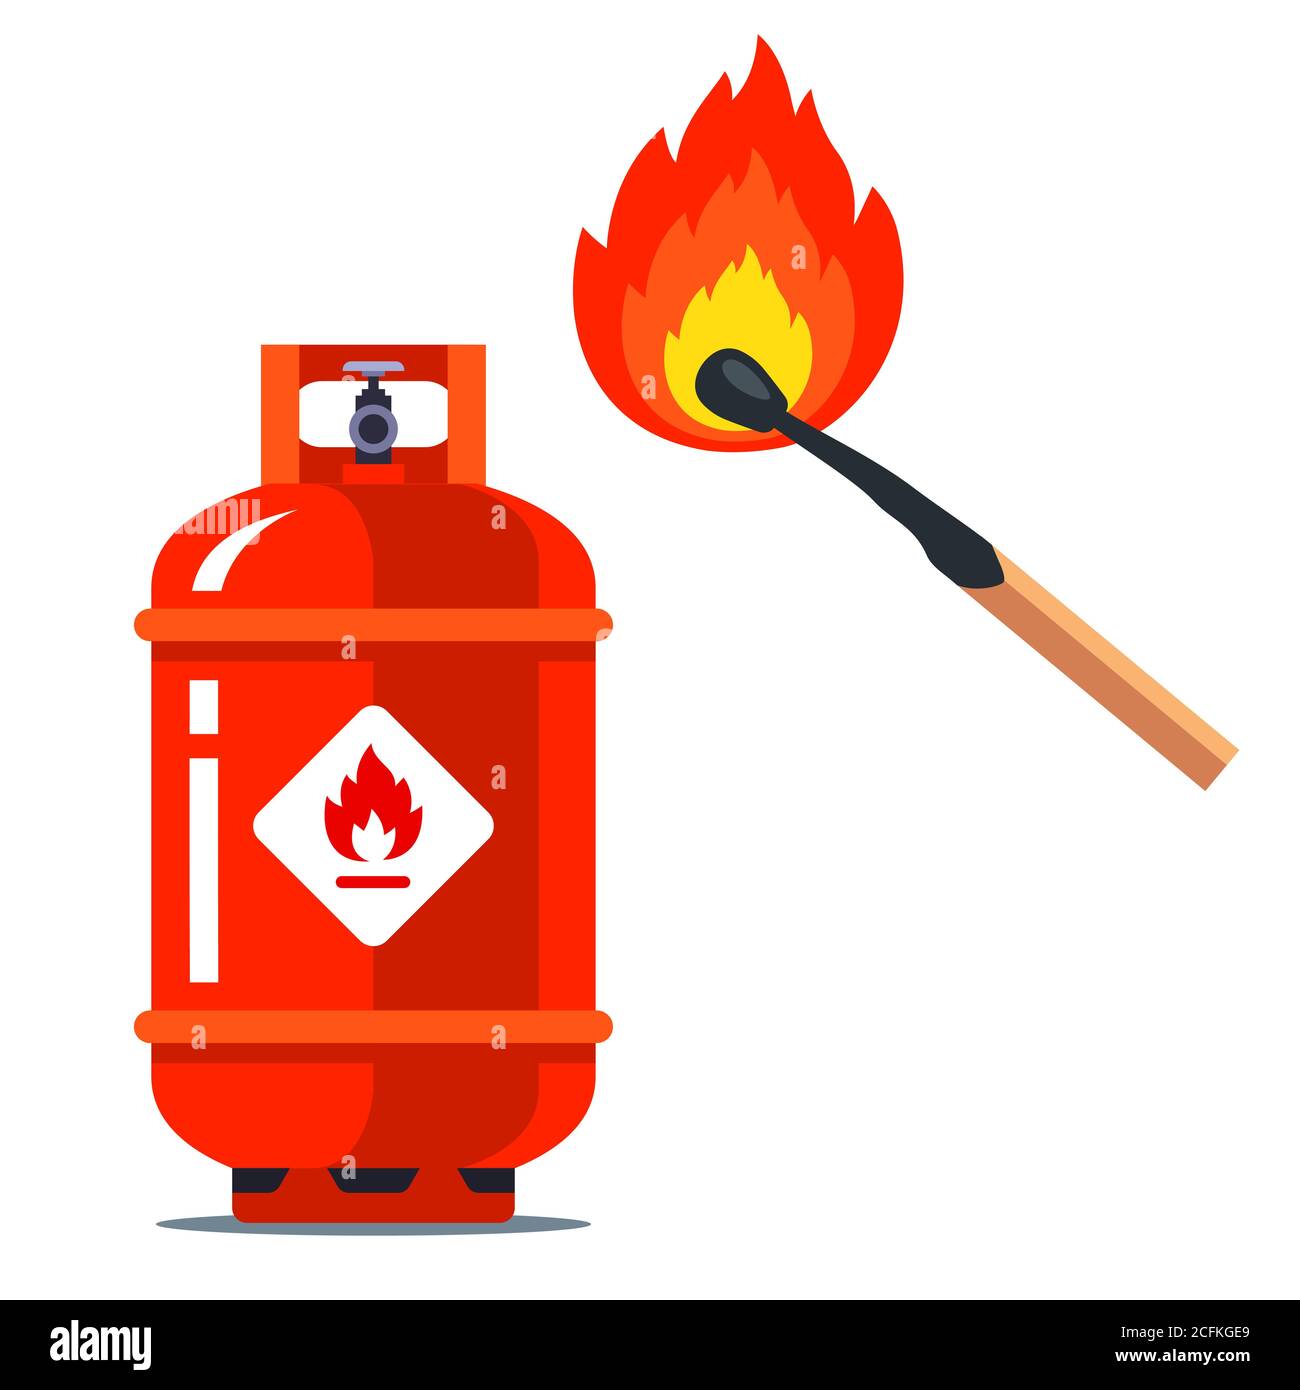 Ein rotes Gas kann neben einem brennenden Streichholz. Brennbare Situation.  Flache Vektorgrafik isoliert auf weißem Hintergrund Stock-Vektorgrafik -  Alamy